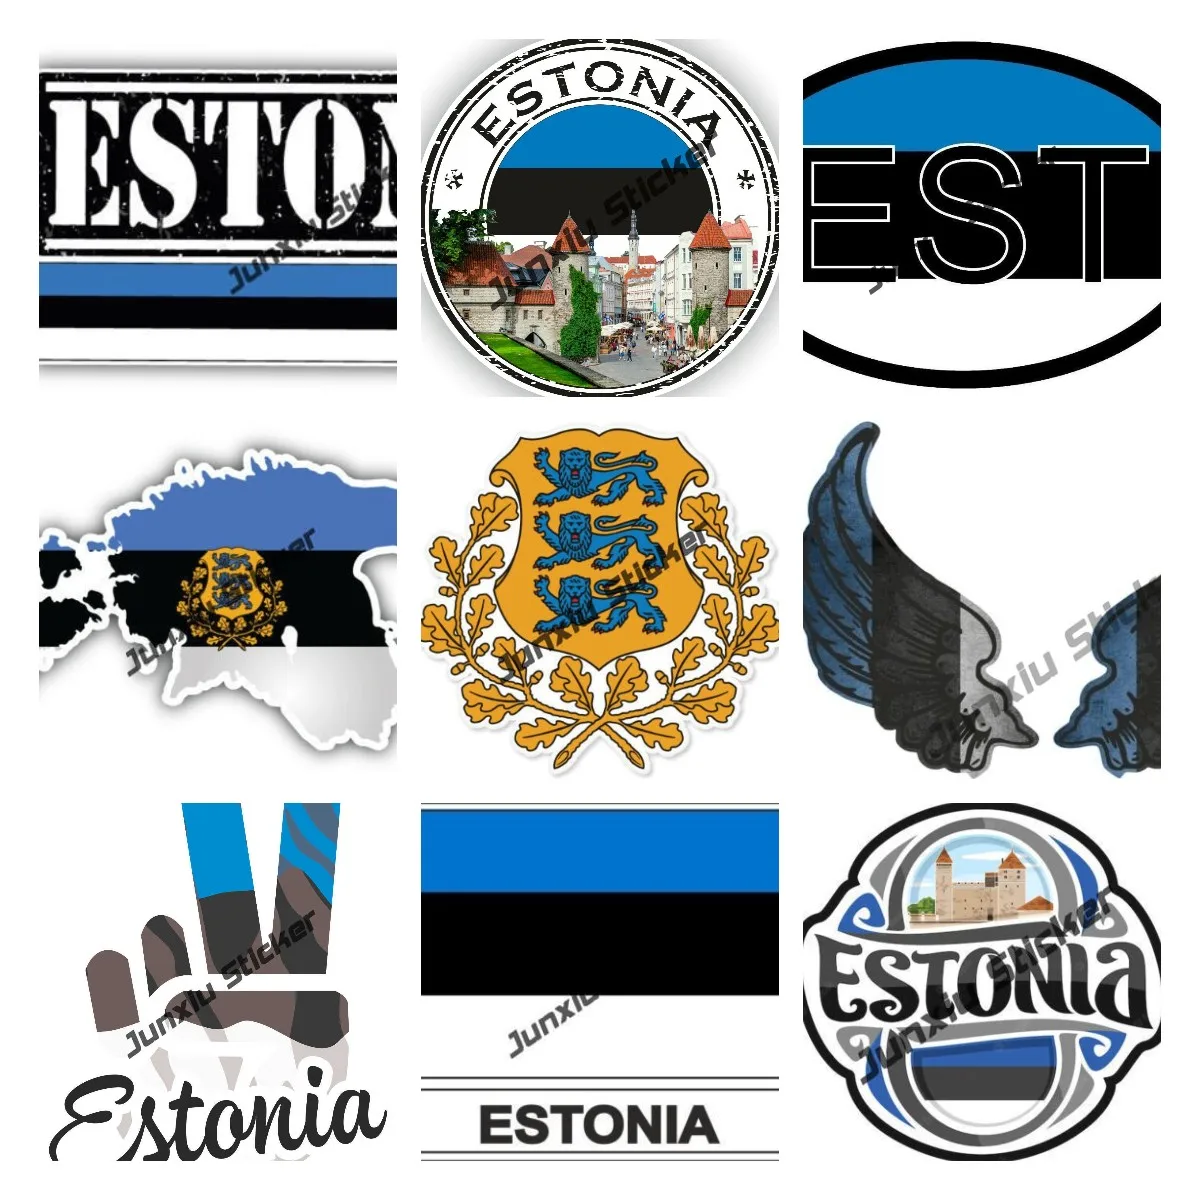 

Наклейка на автомобиль с круглым флагом Эстонии, защитная карта страны, флаг-бабочка, наклейка на автомобиль, стильные аксессуары для автомобиля